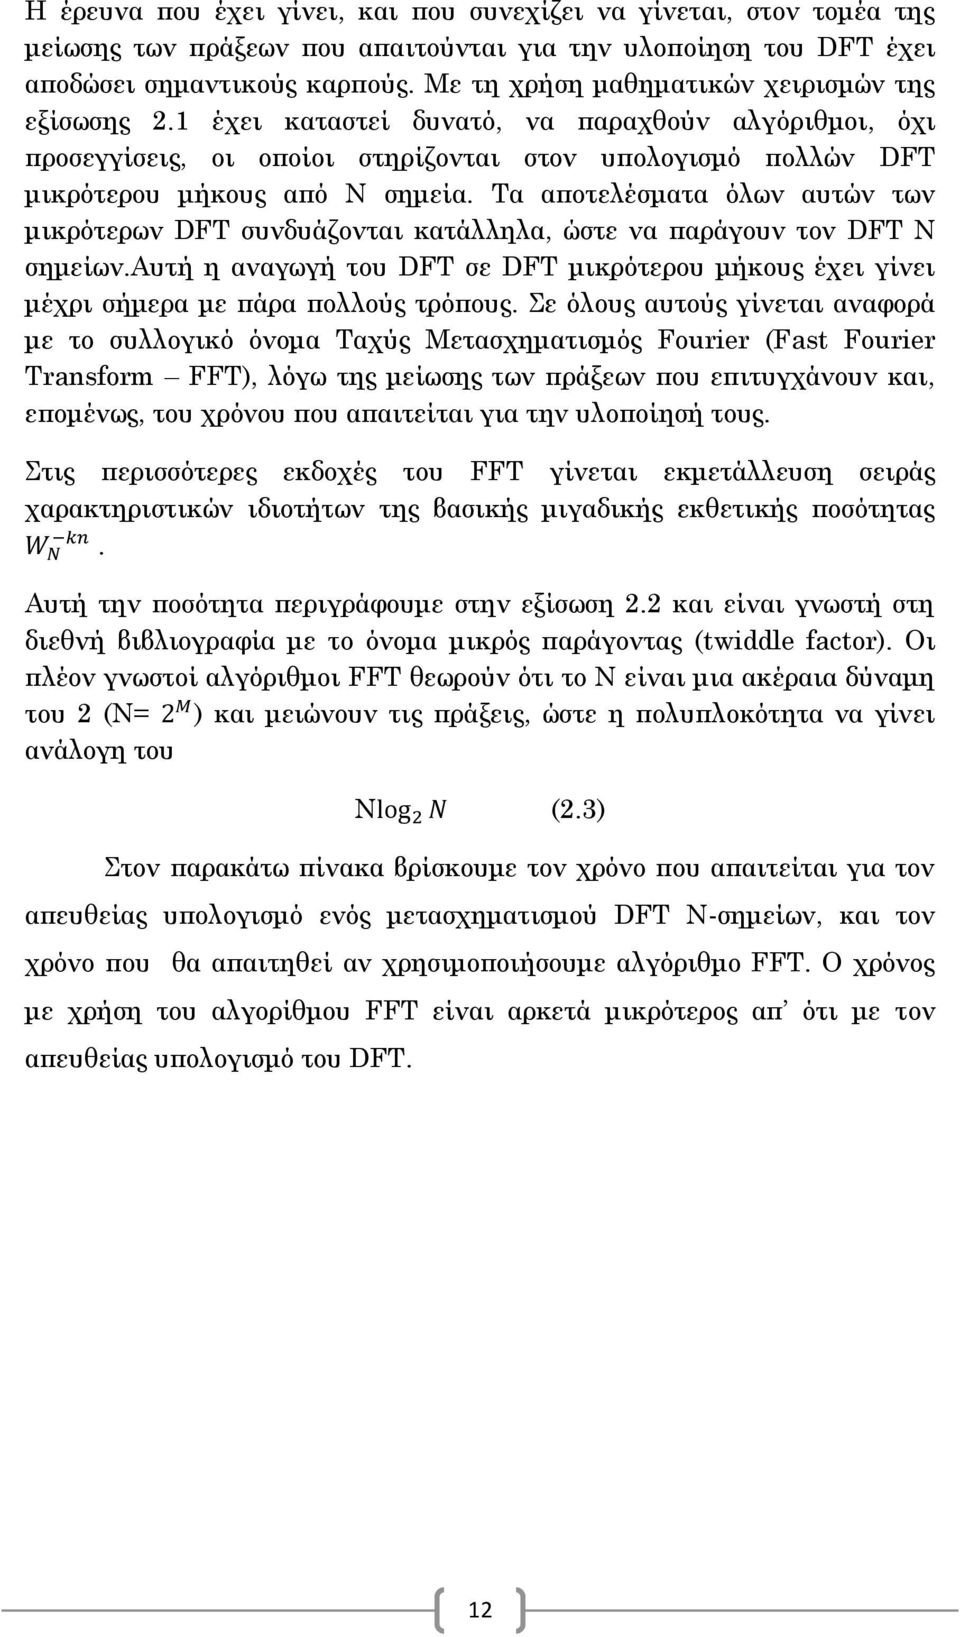 Τα αποτελέσματα όλων αυτών των μικρότερων DFT συνδυάζονται κατάλληλα, ώστε να παράγουν τον DFT Ν σημείων.